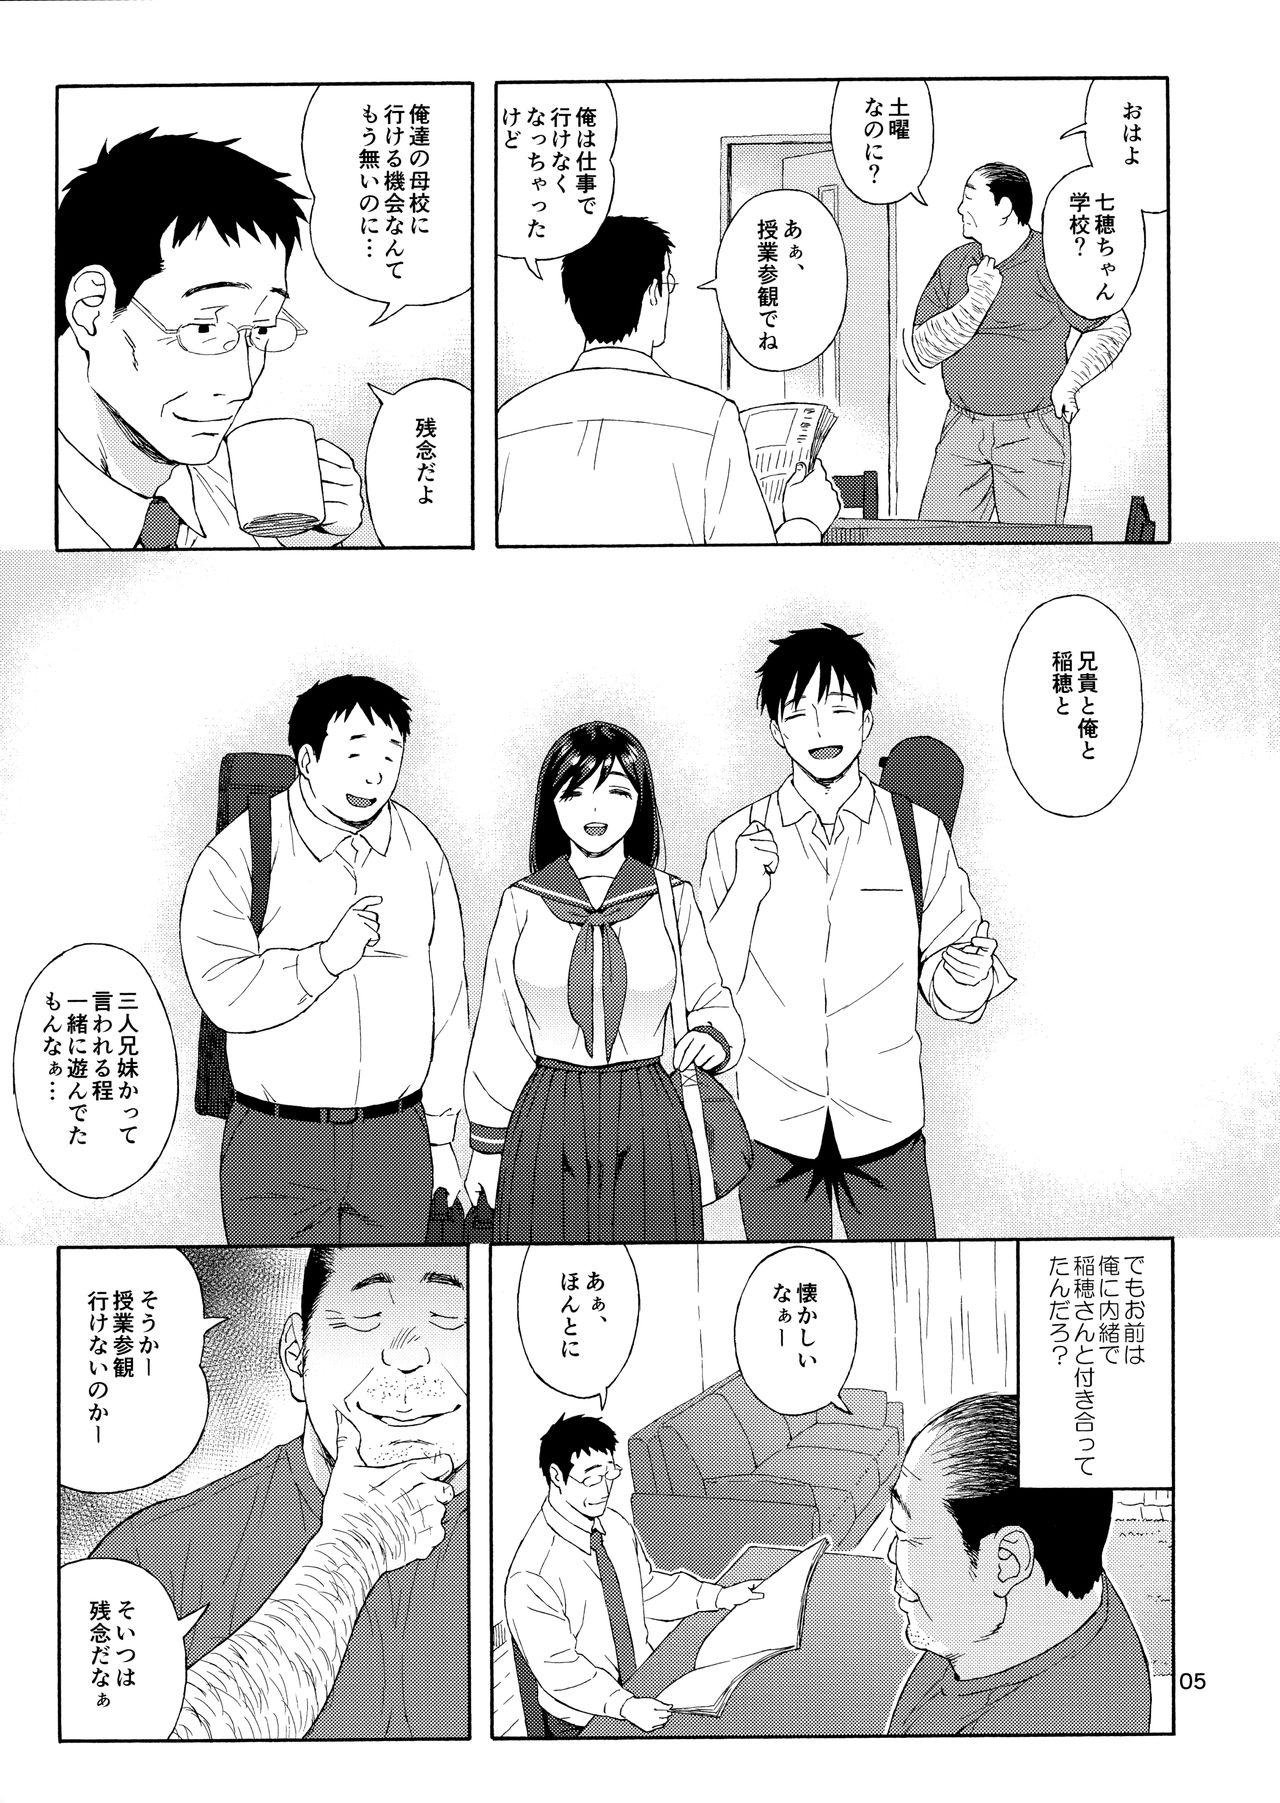 China Otouto no Musume 3 - Original Polish - Page 4